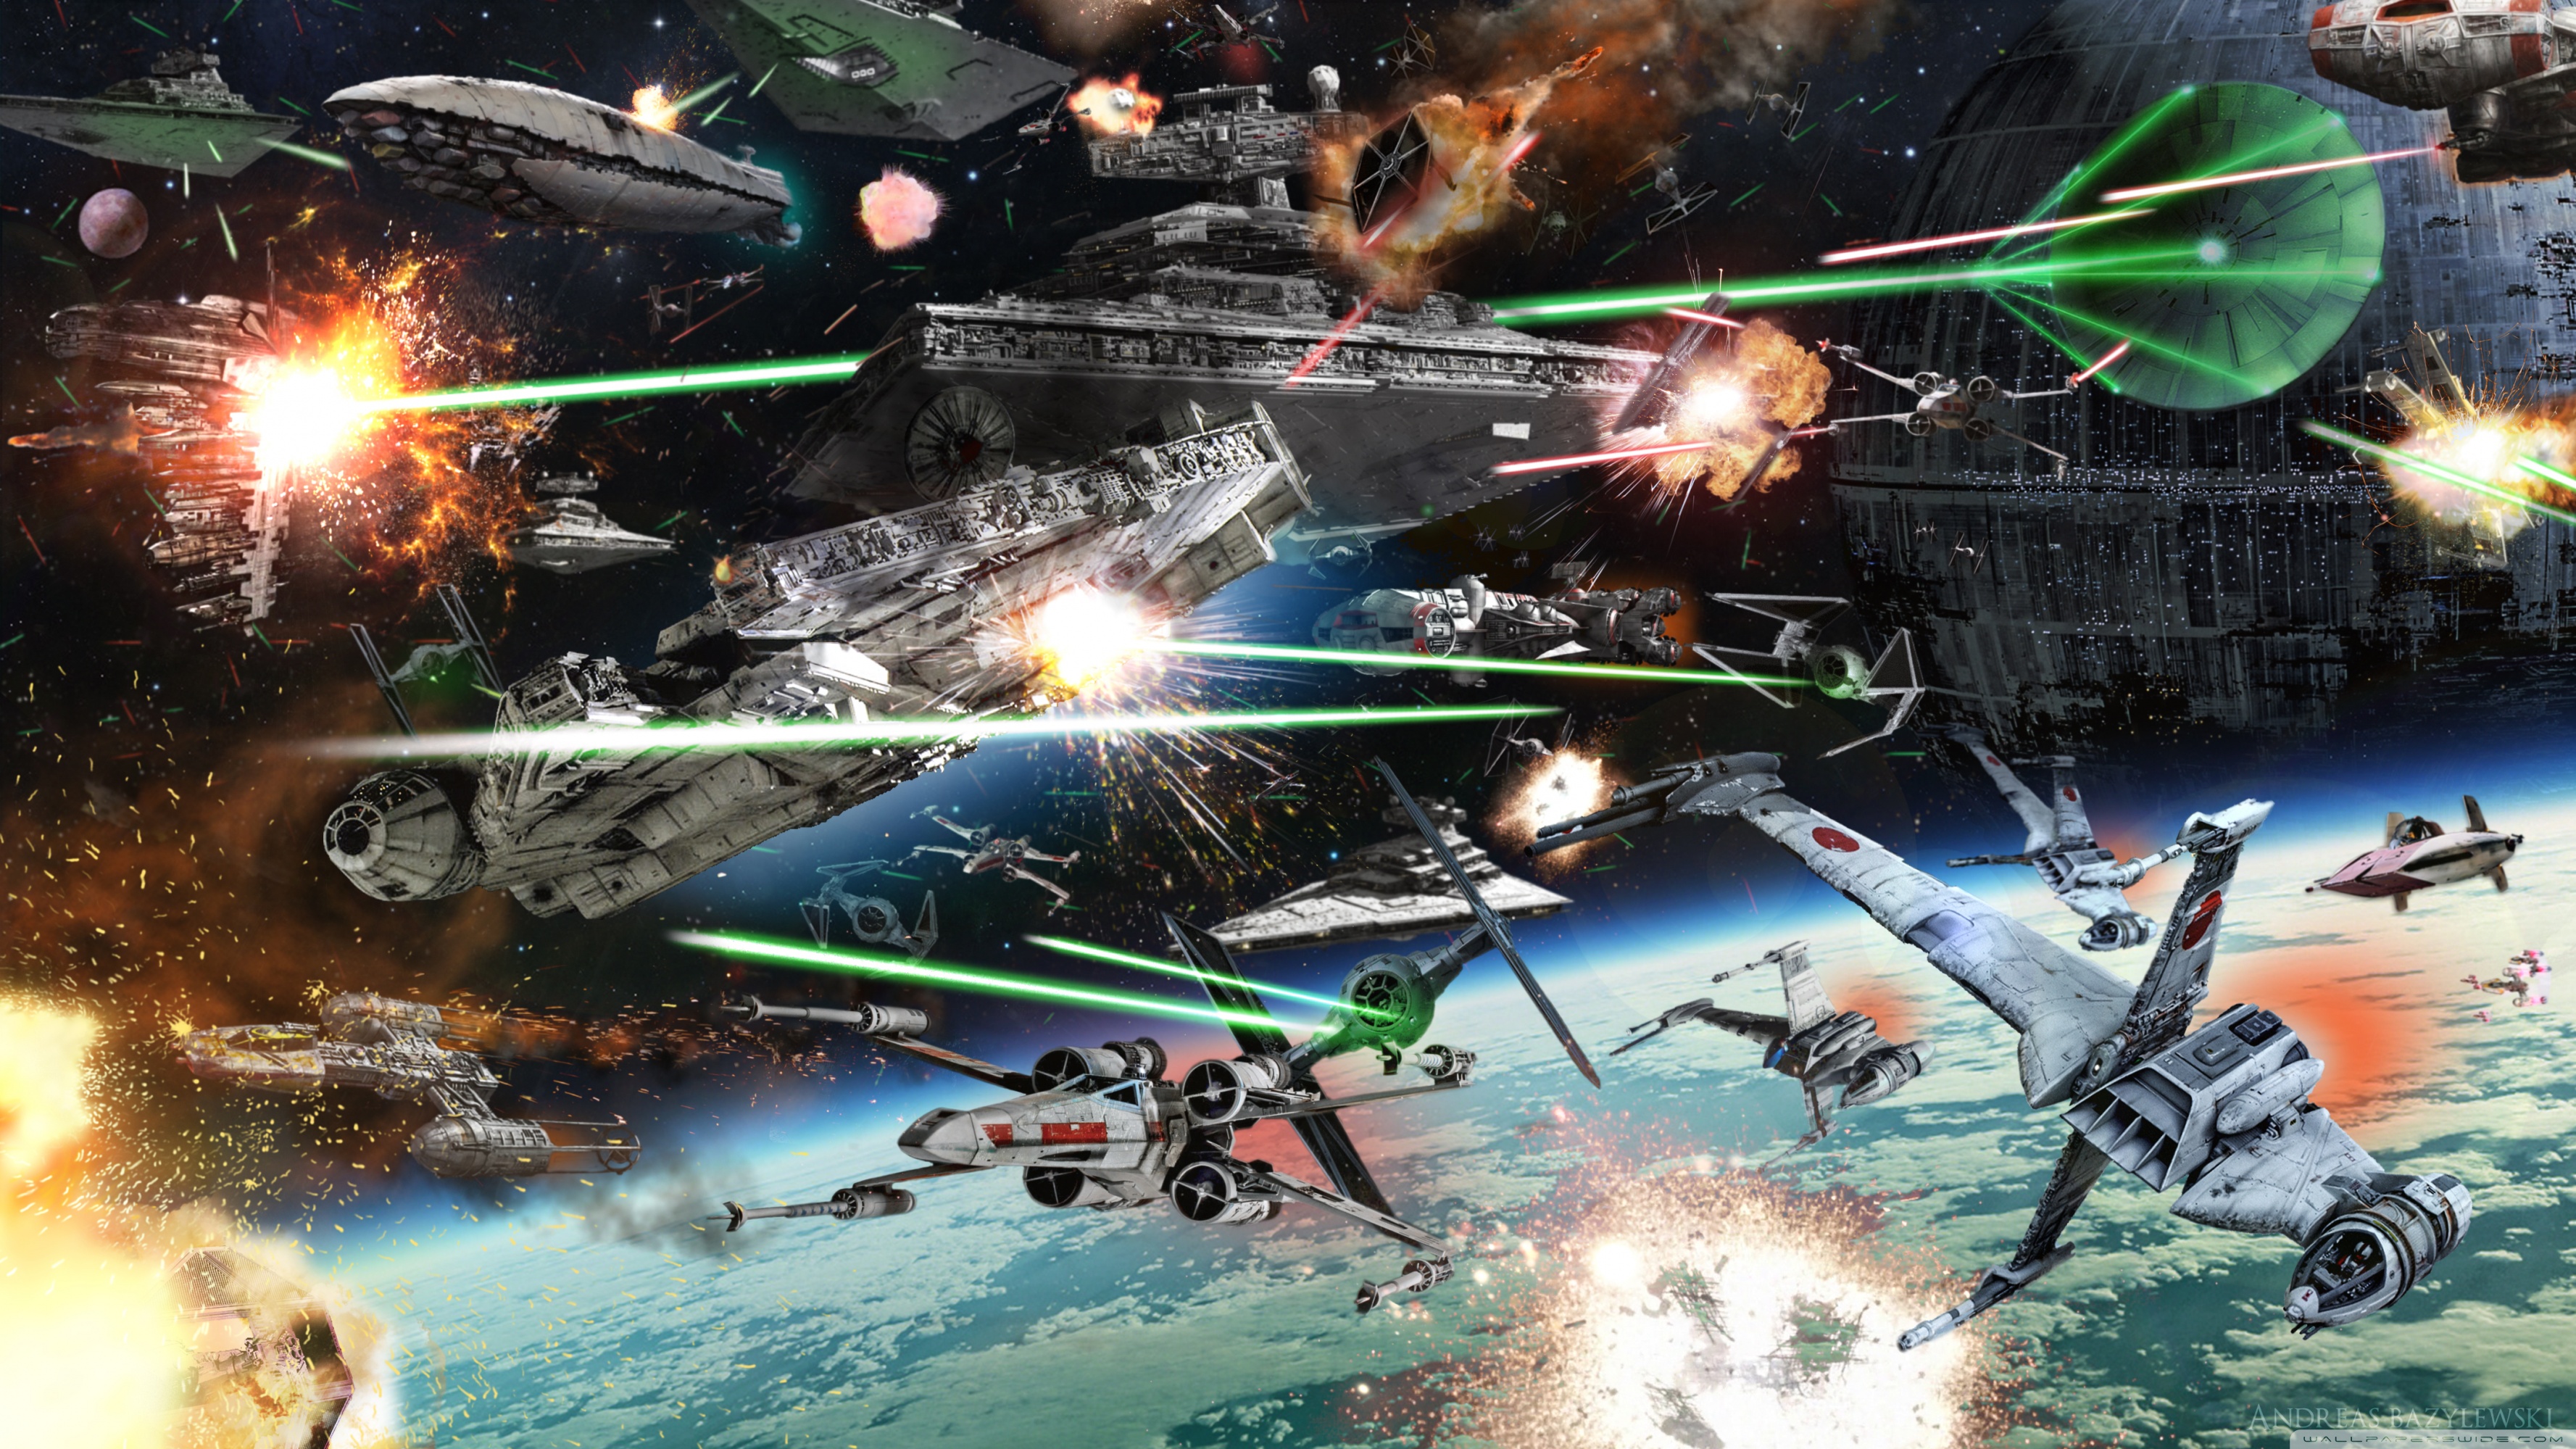 Star Wars Space Battle Ultra HD Desktop Background Wallpaper For